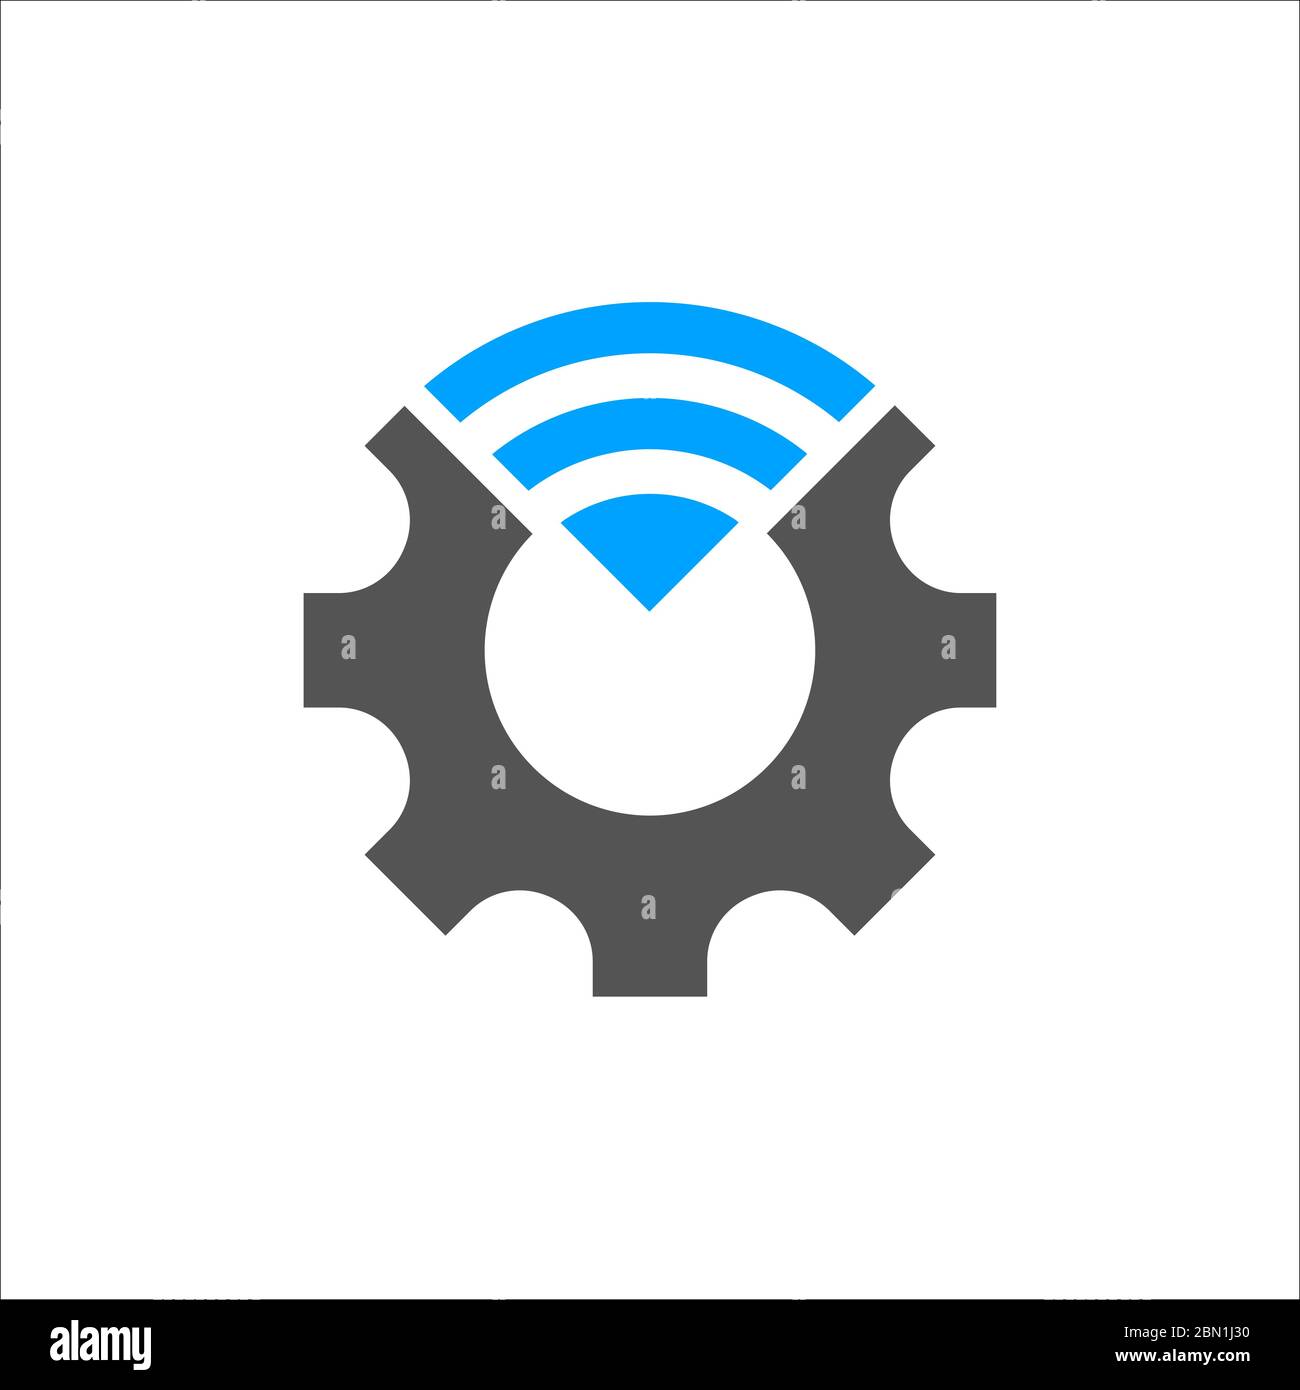 Illustration vectorielle de l'industrie 4.0. Icône de connexion bleue et roue dentée. Révolution technologique dans le secteur de la fabrication avec système numérique. SPE 10 Illustration de Vecteur